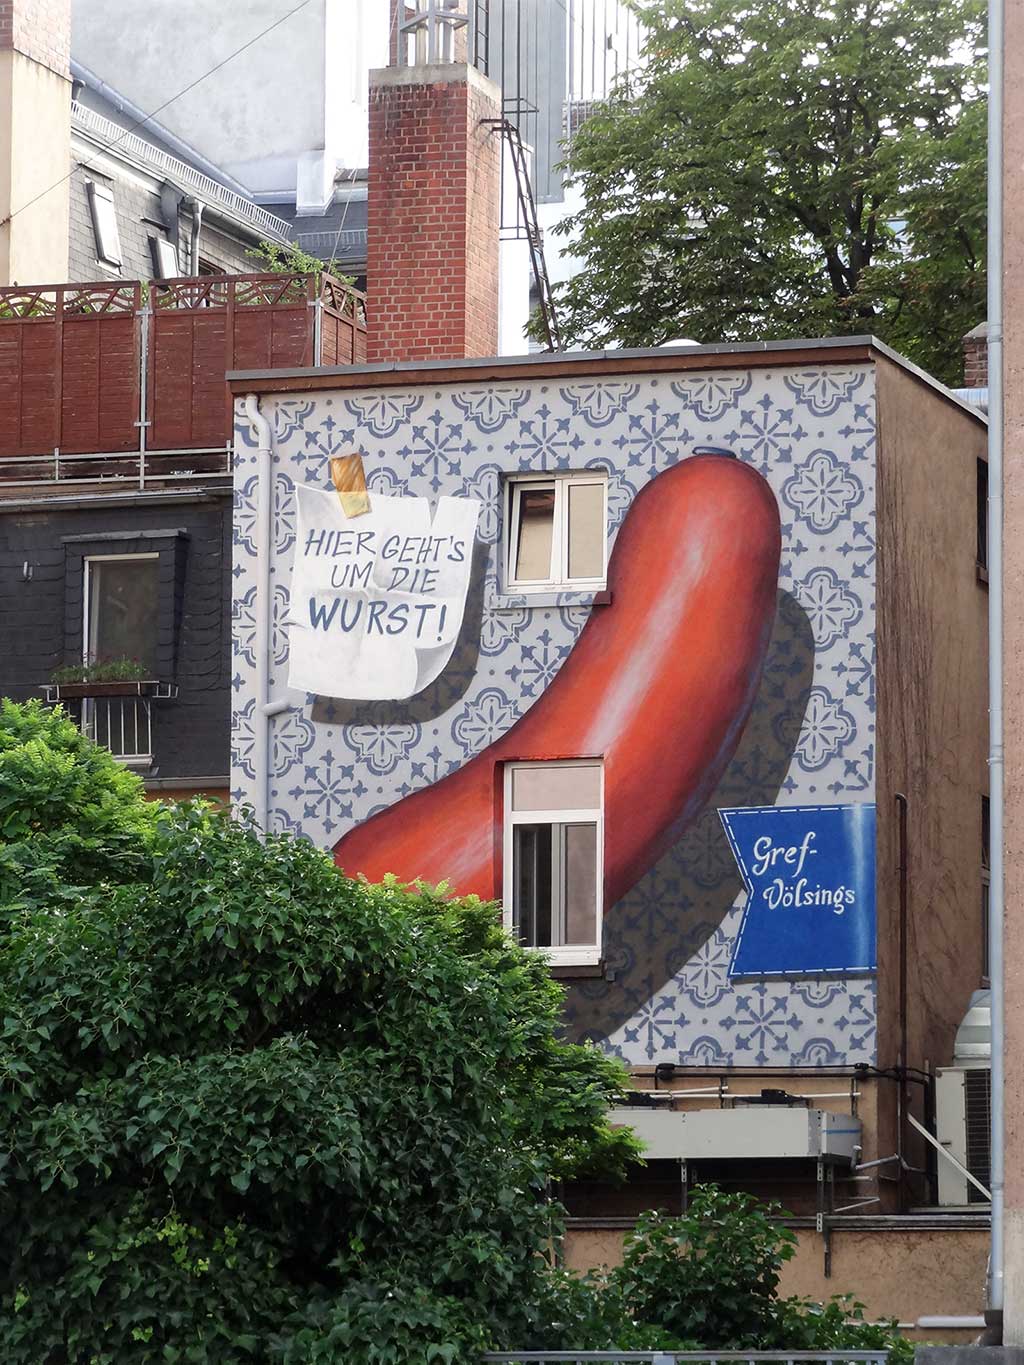 Gref-Völsings-Hausfassade mit großen Wurst-Motiv bemalt